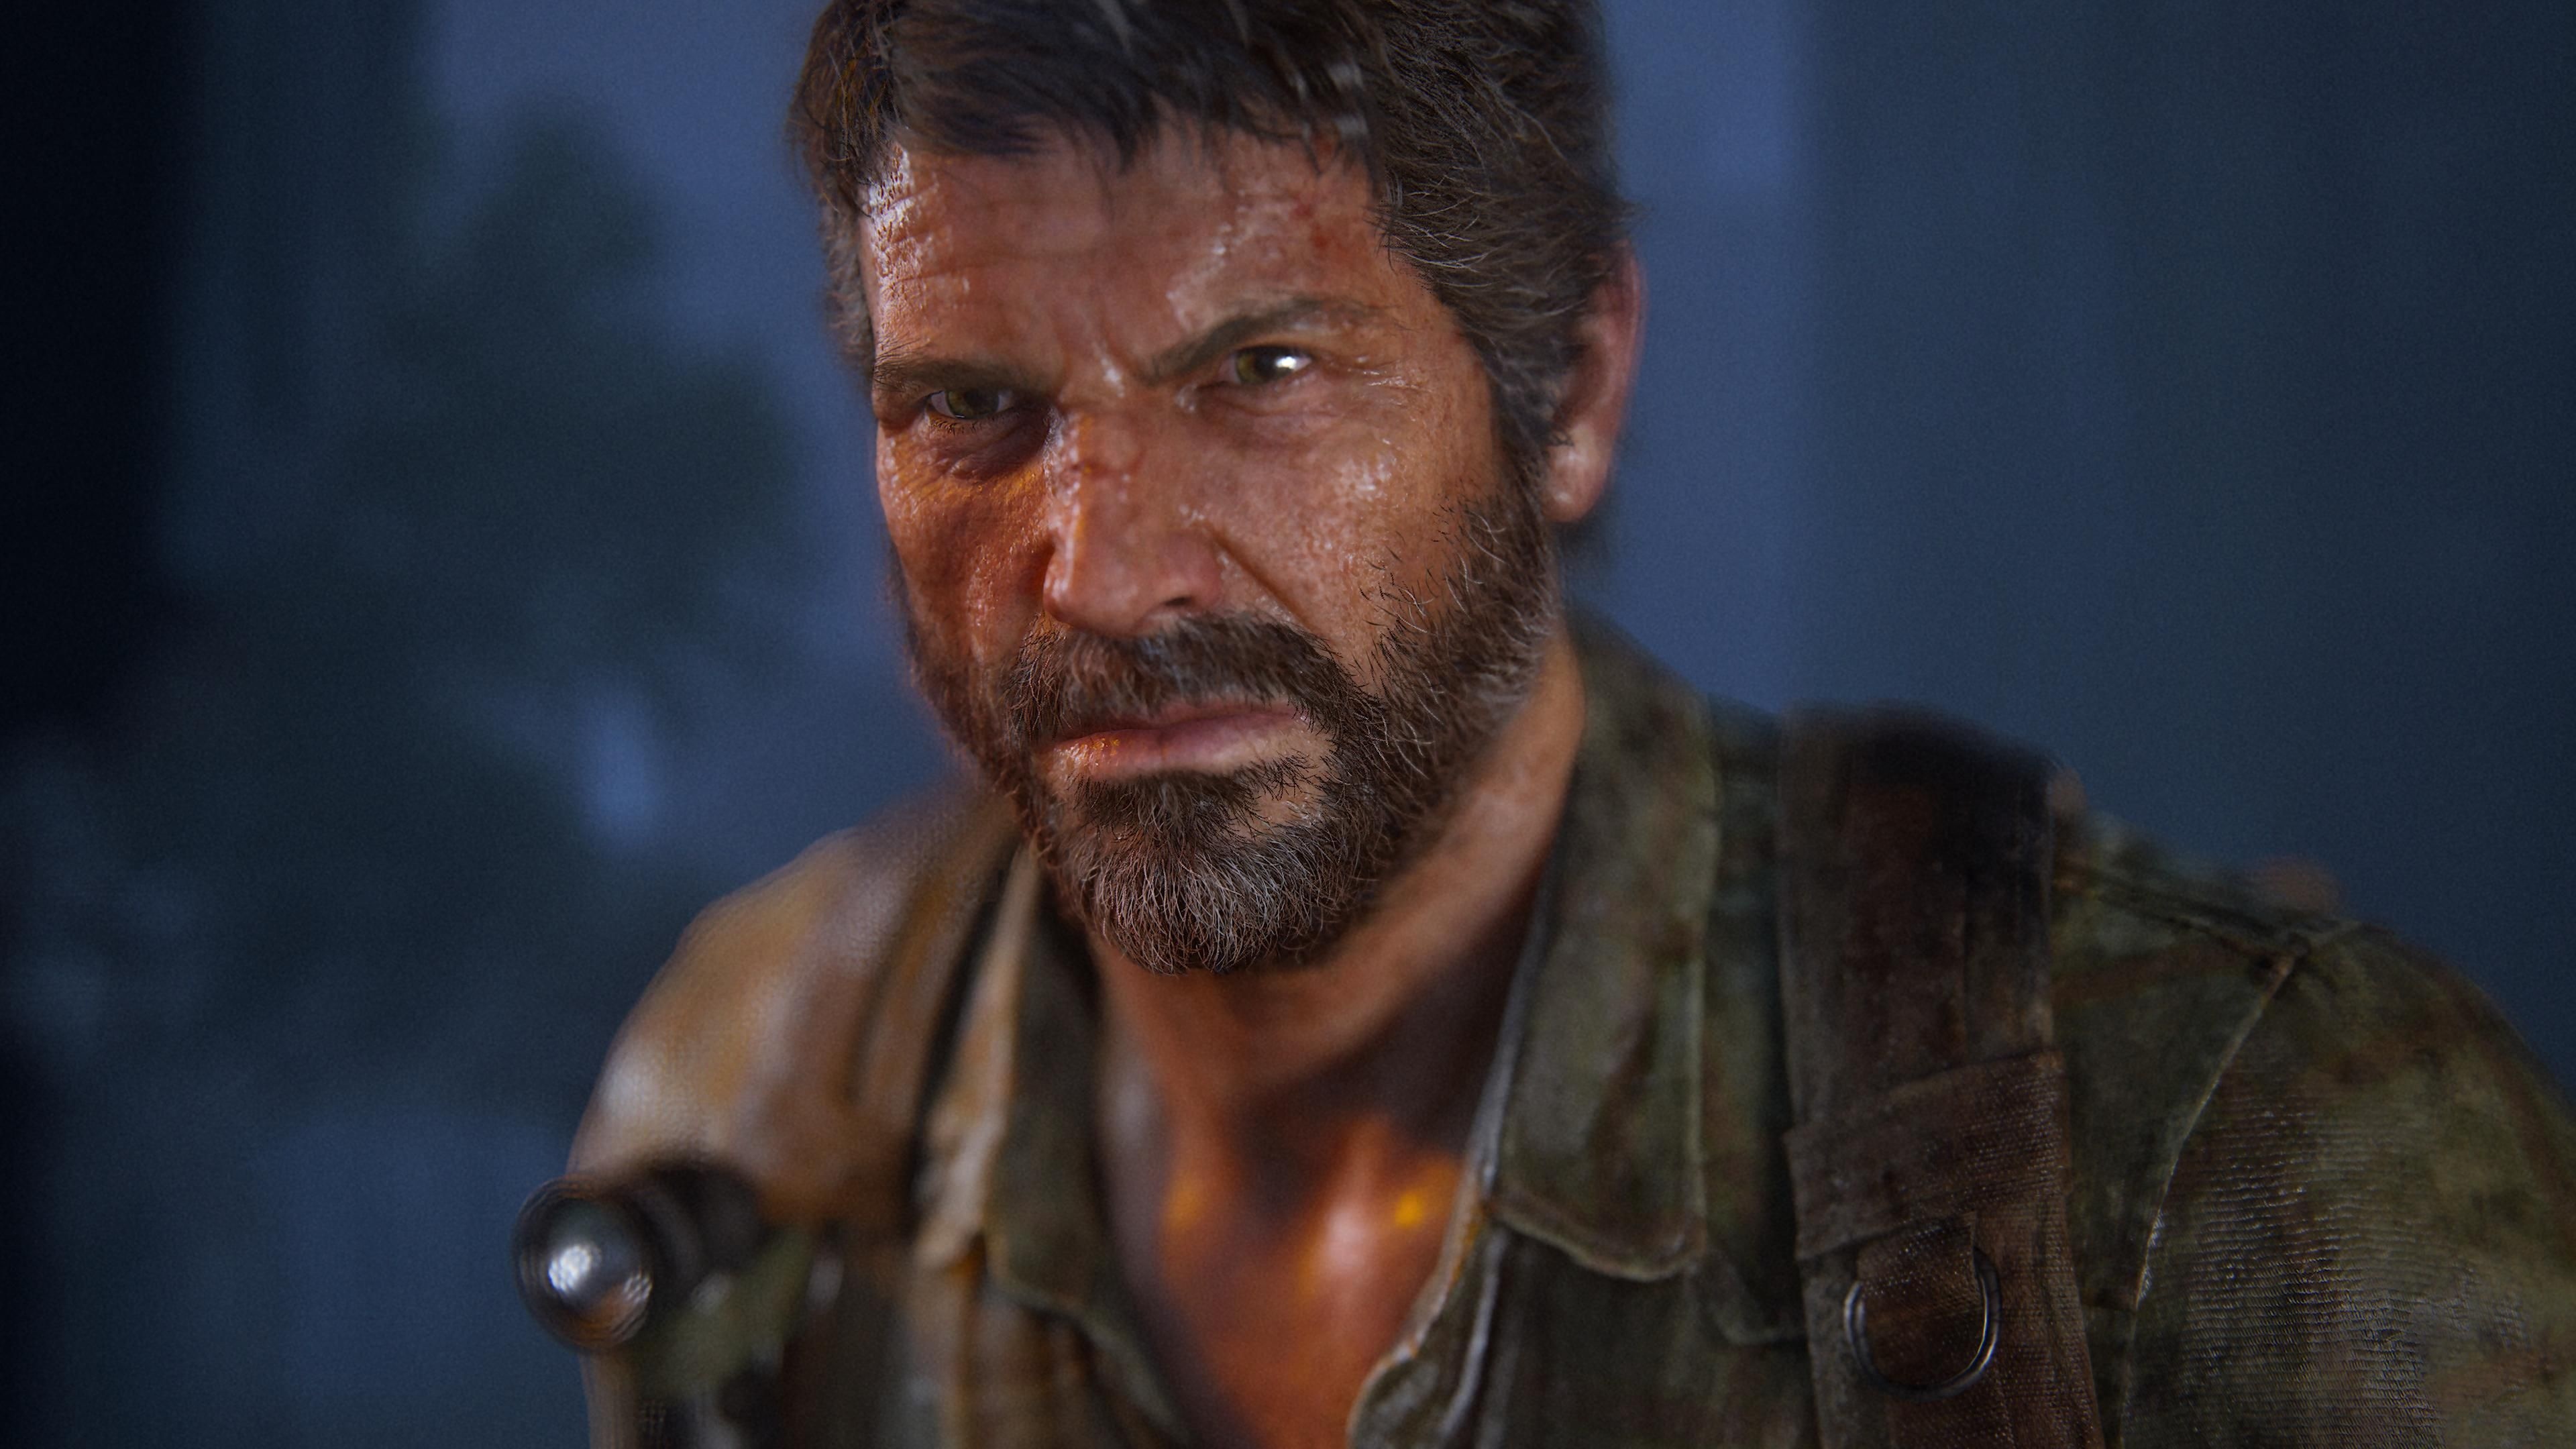 #Die gebeutelte PC-Version von The Last of Us hat gerade einen dicken Patch mit 25 GB bekommen